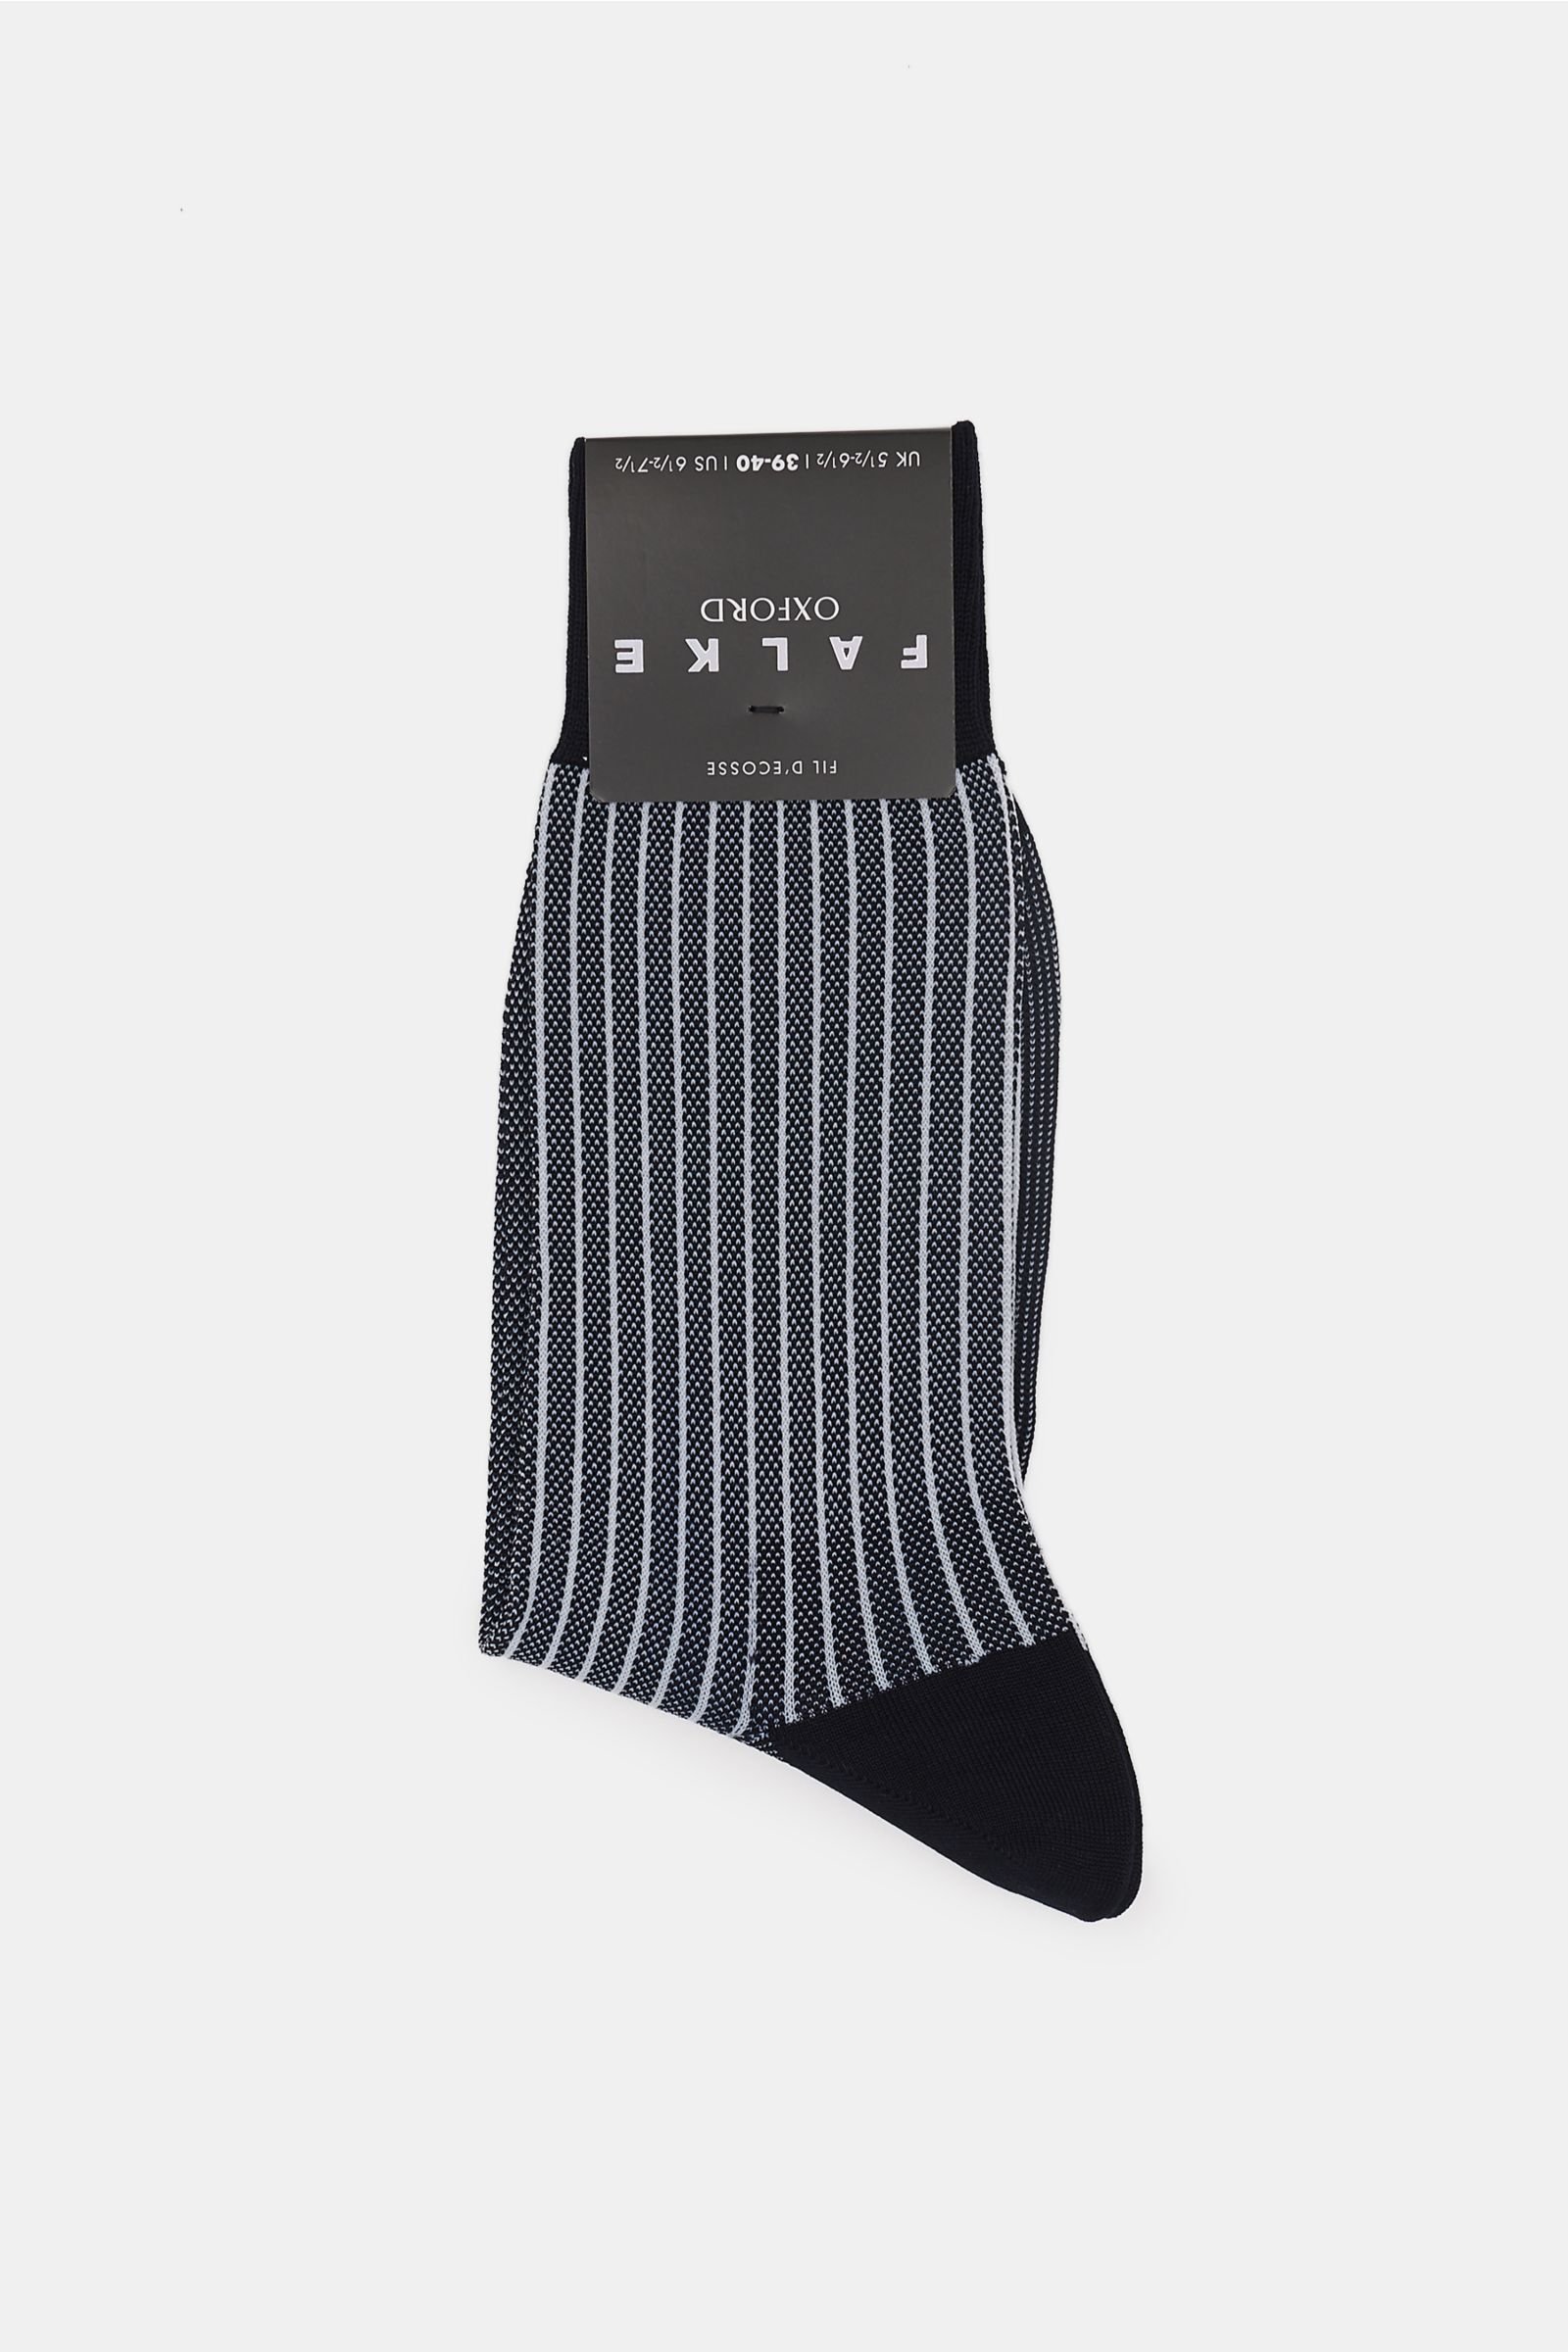 Socks 'Oxford Stripe' dark navy/white striped